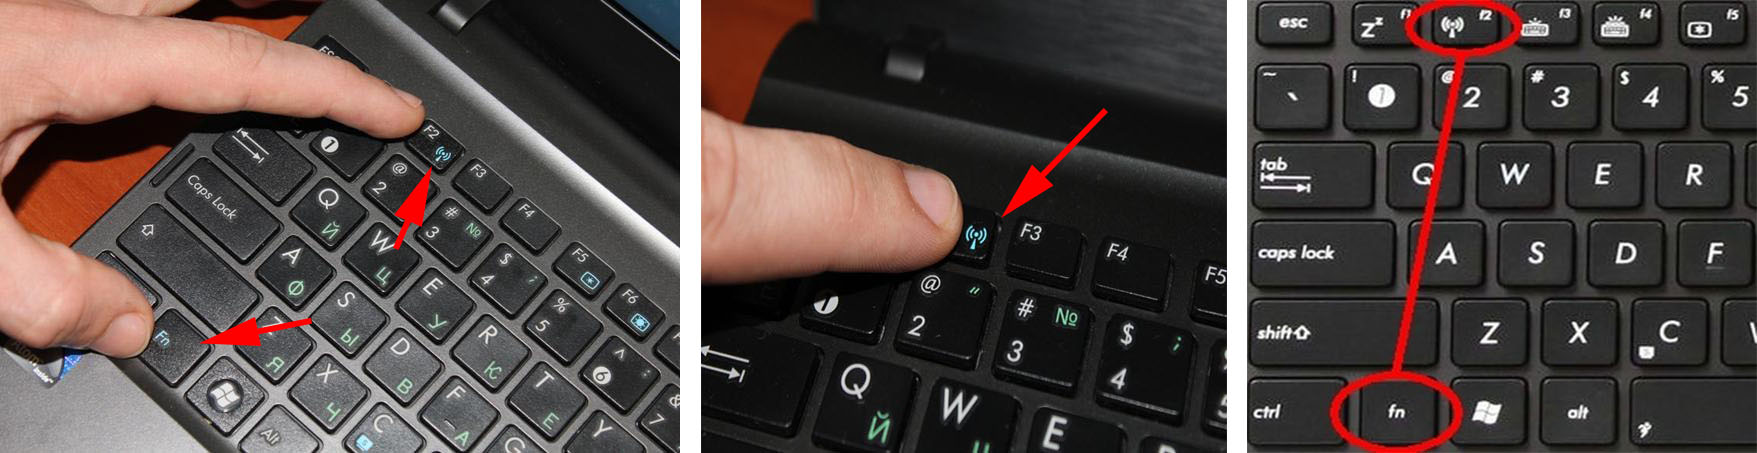 Клавиша WiFi на клавиатуре. Сочетания Fn+F2